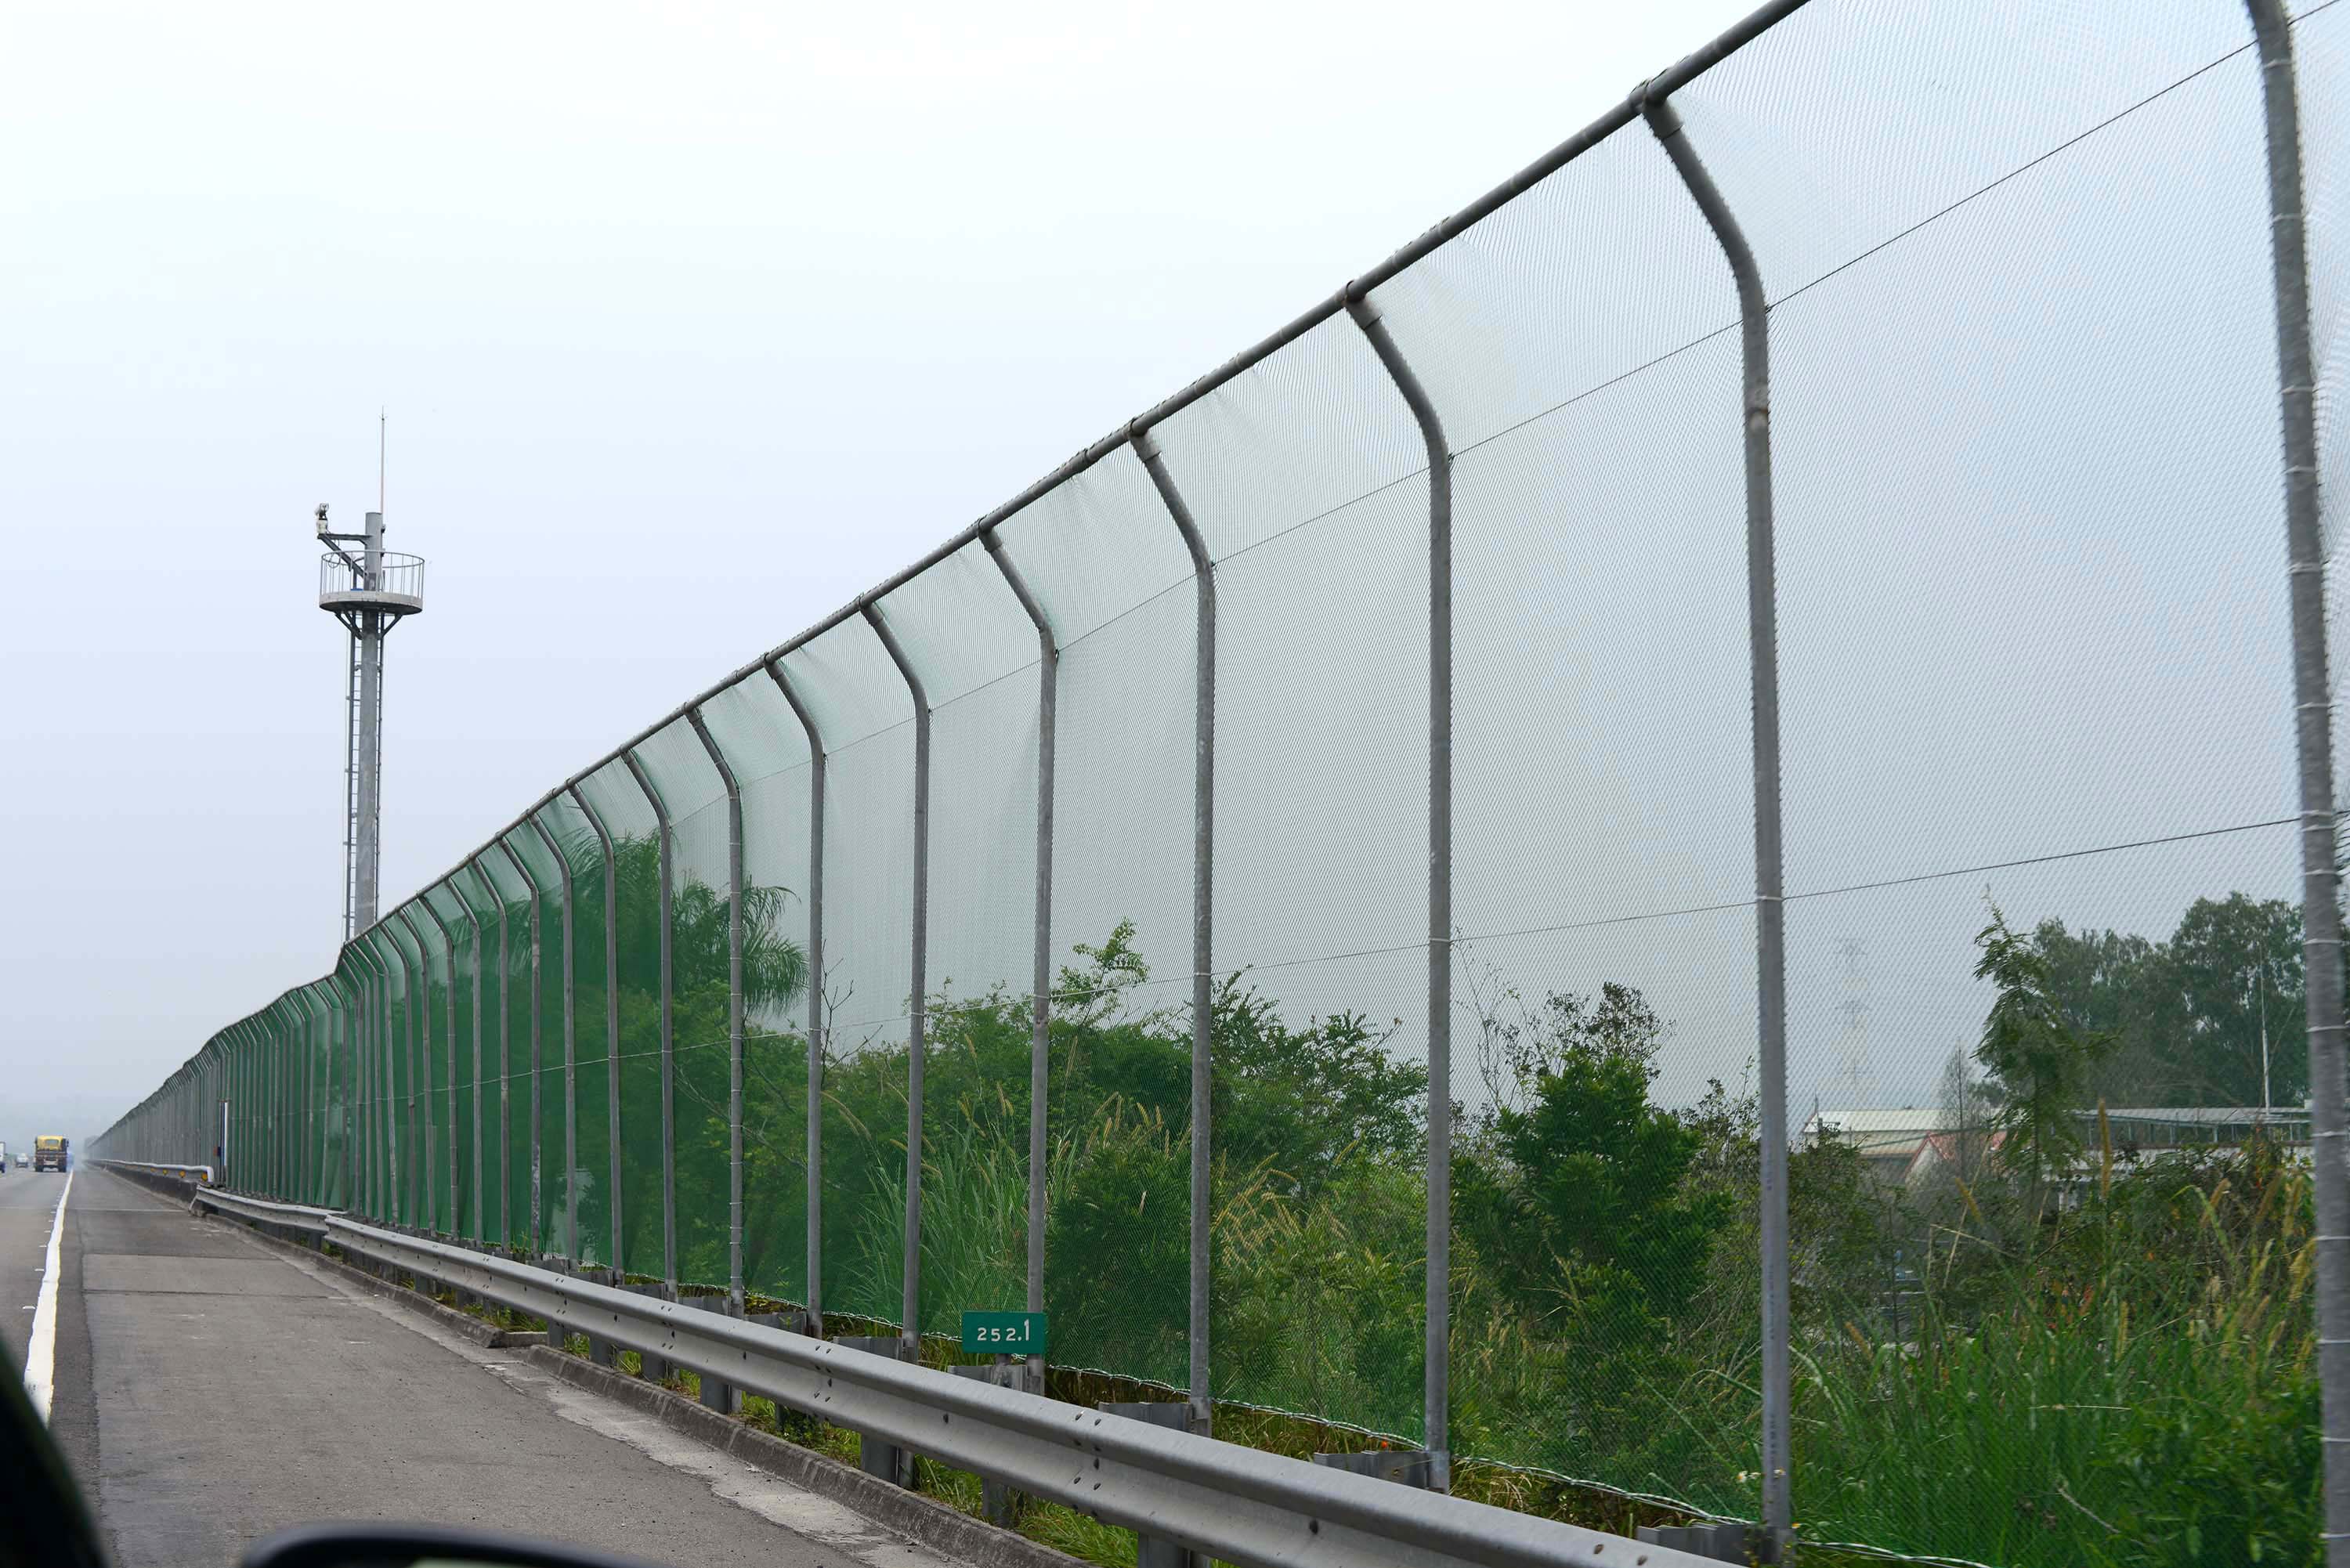 國道3號林內段的紫斑蝶防護圍籬，作用是拉升紫斑蝶穿越國道時的飛行高度，減少紫斑蝶被捲入高速疾馳的車輛氣流中。 圖│林德恩